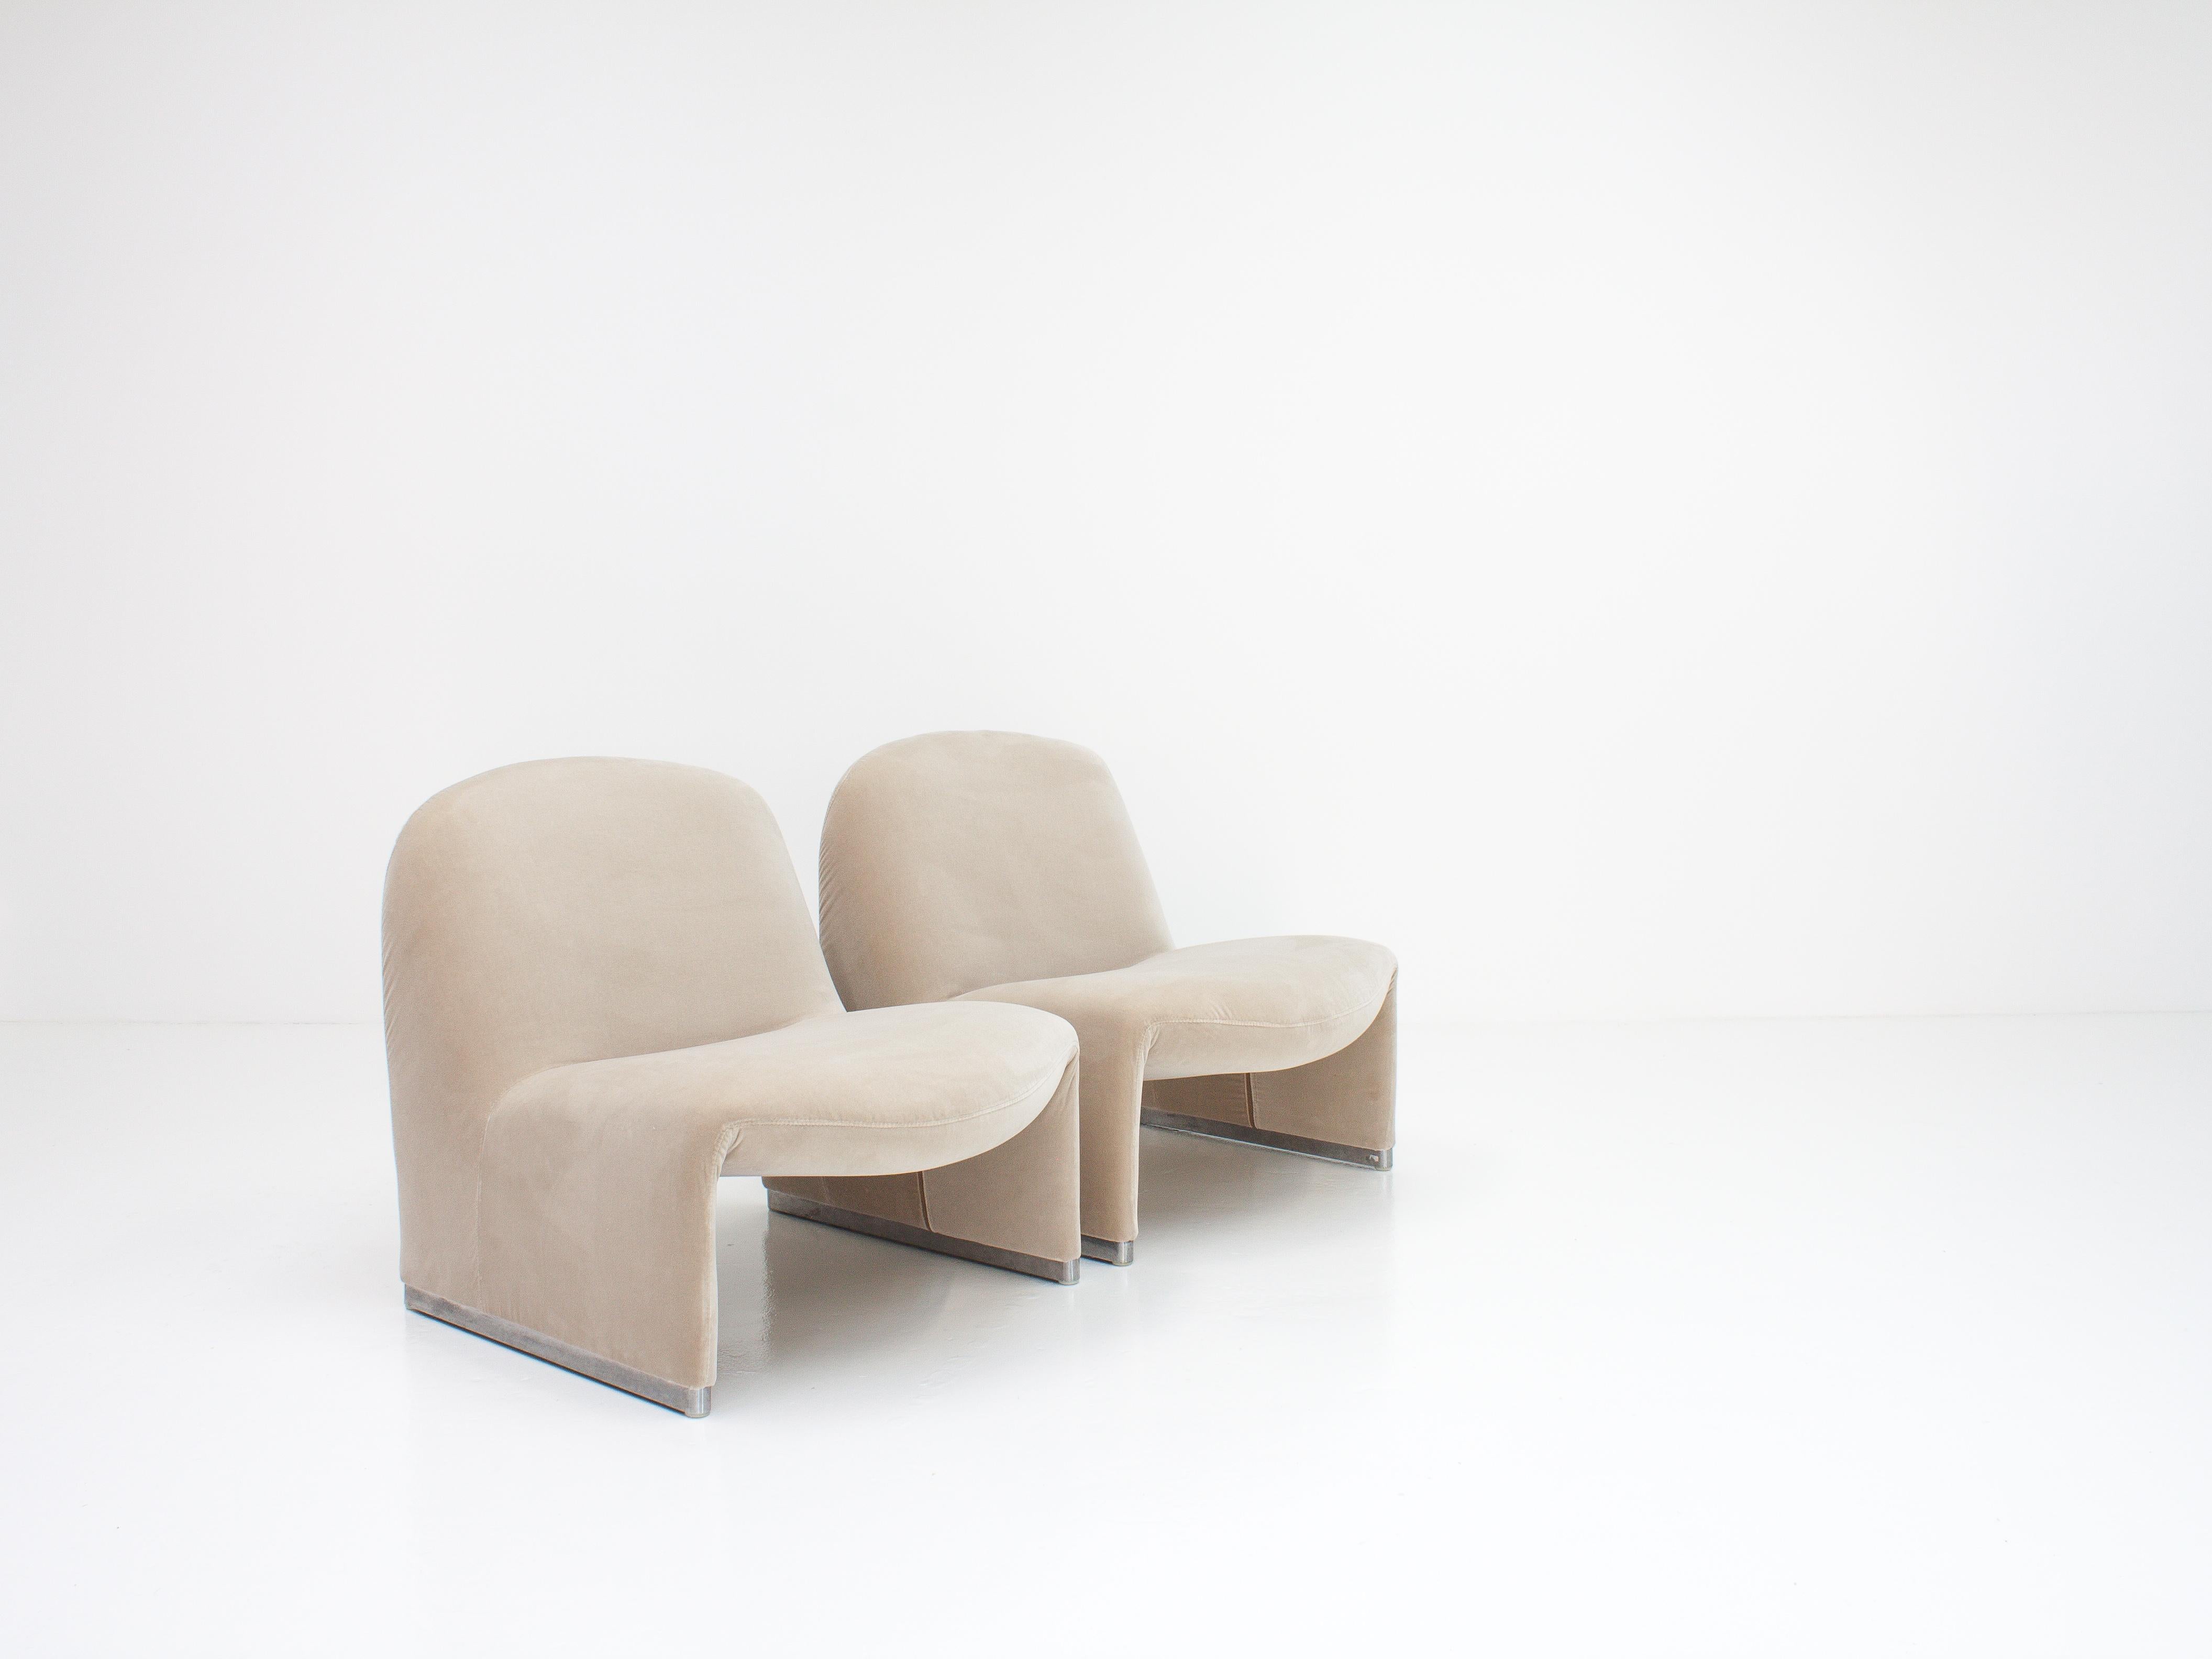 20th Century Pair of Giancarlo Piretti “Alky” Chairs in New Velvet, Artifort, 1970s